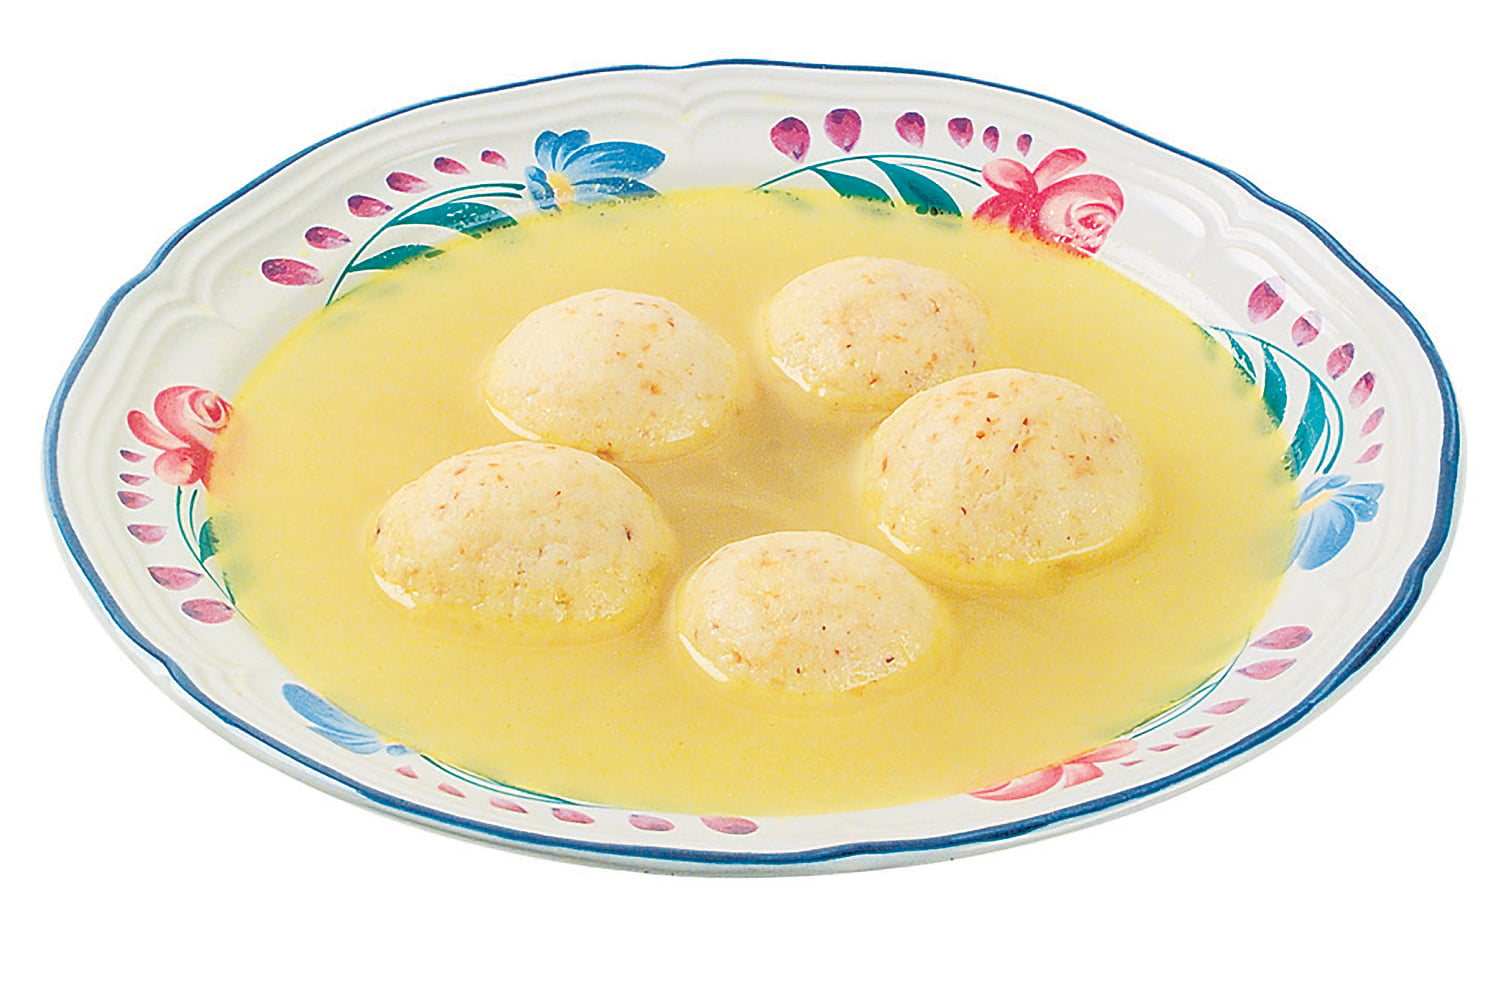 Matzo Soup in Decorative White Bowl Food Picture